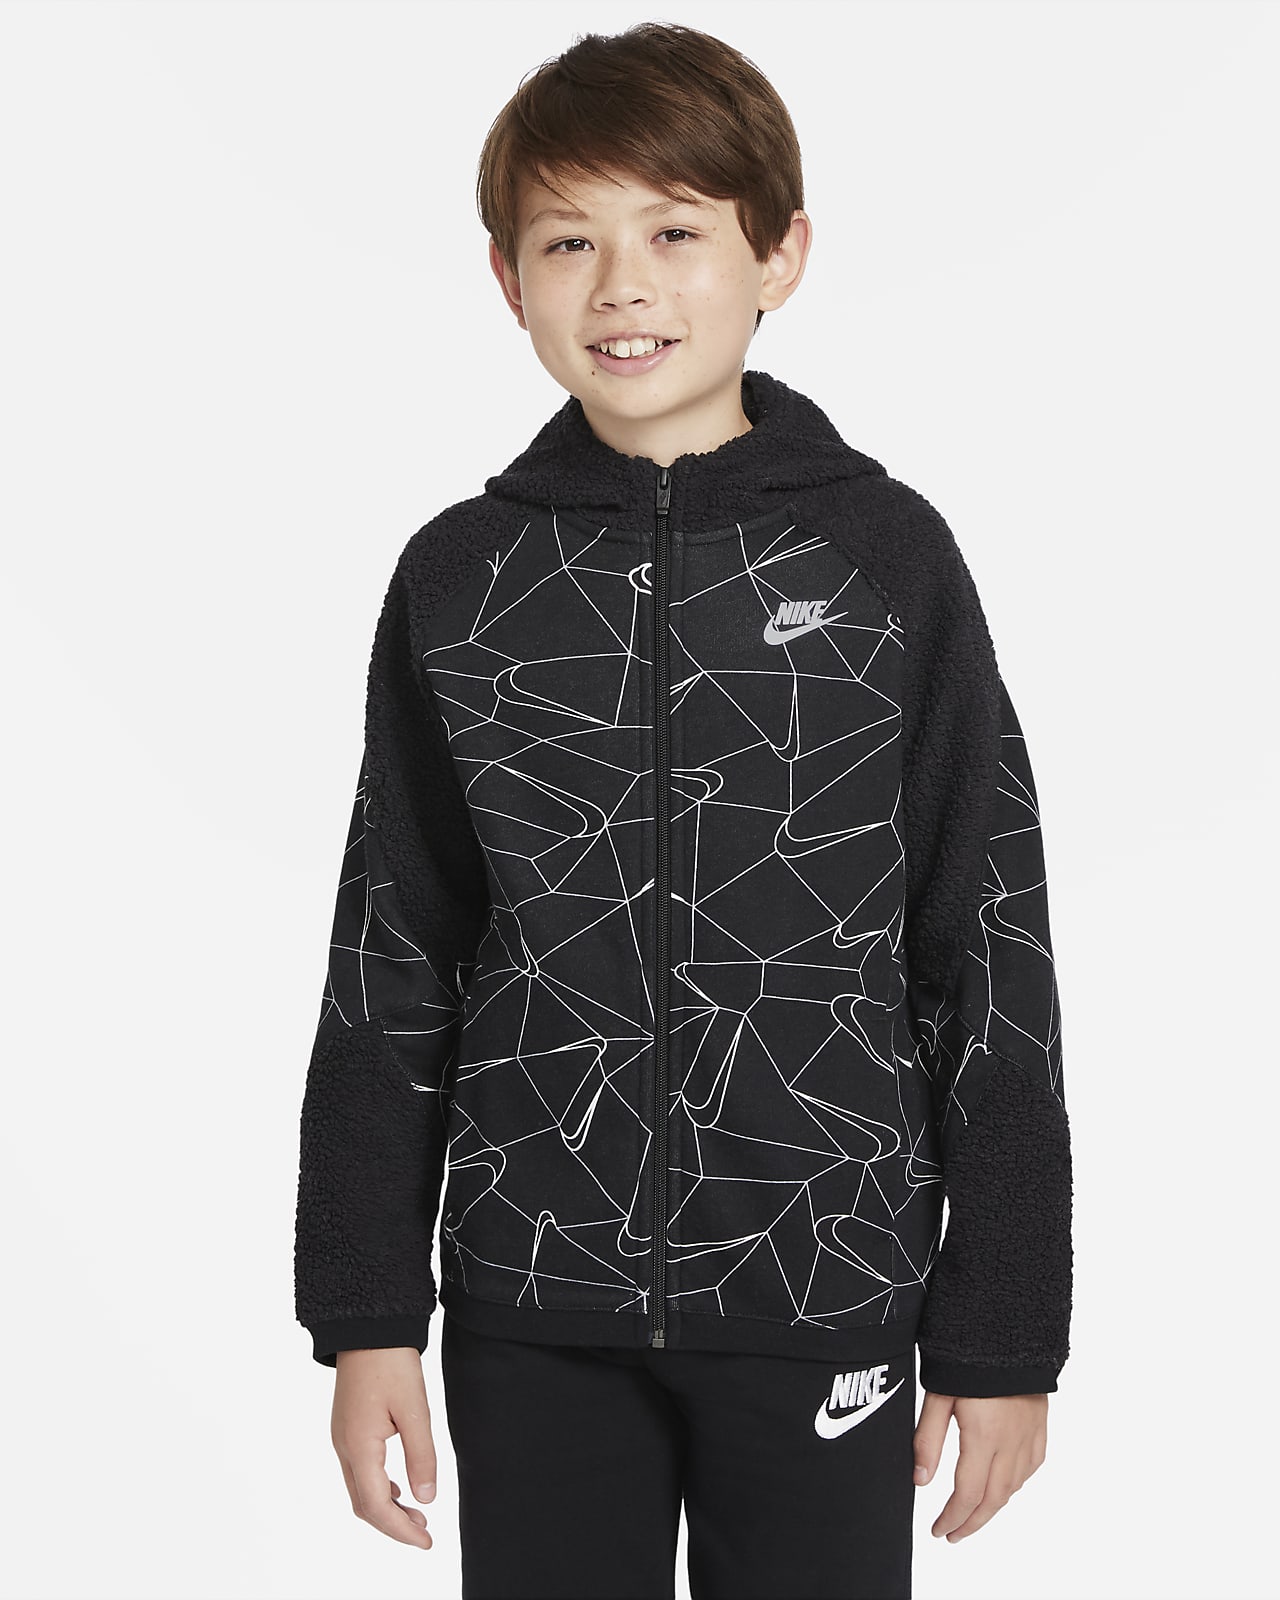 Nike Sportswear Club winterfester Hoodie mit durchgehendem Reißverschluss für ältere Kinder (Jungen)